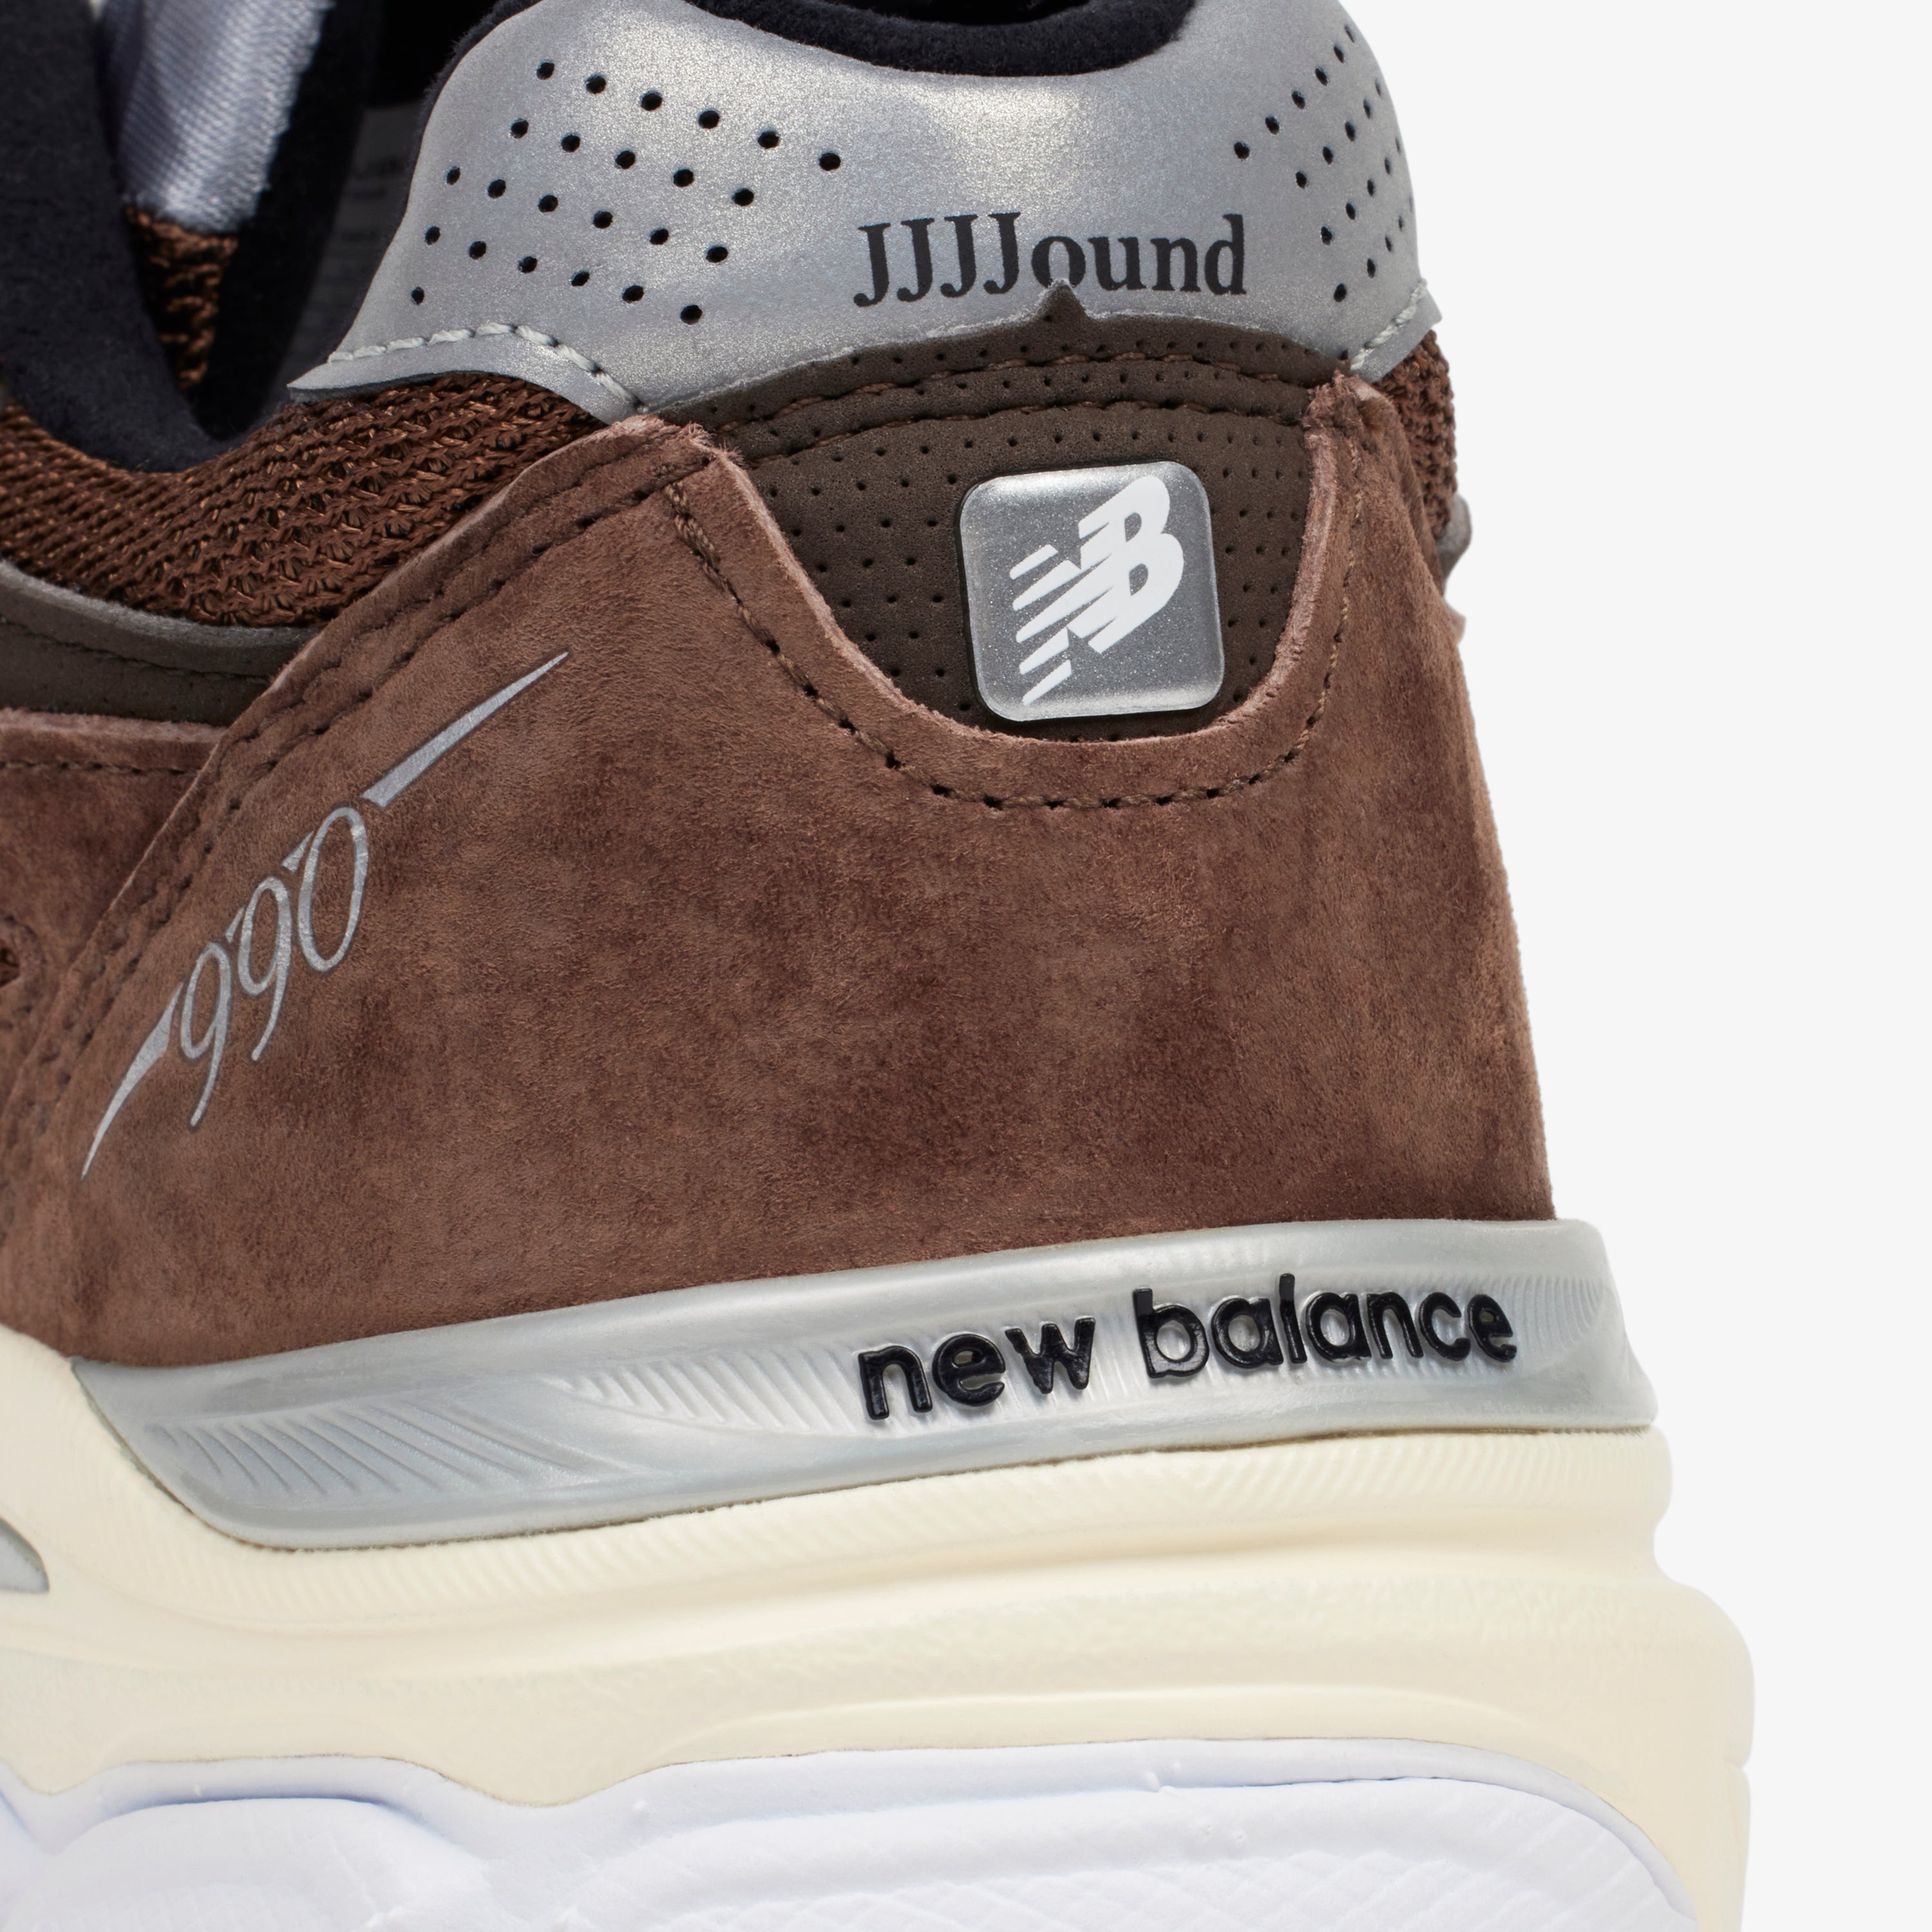 New Balance 990v3 - Brown/White